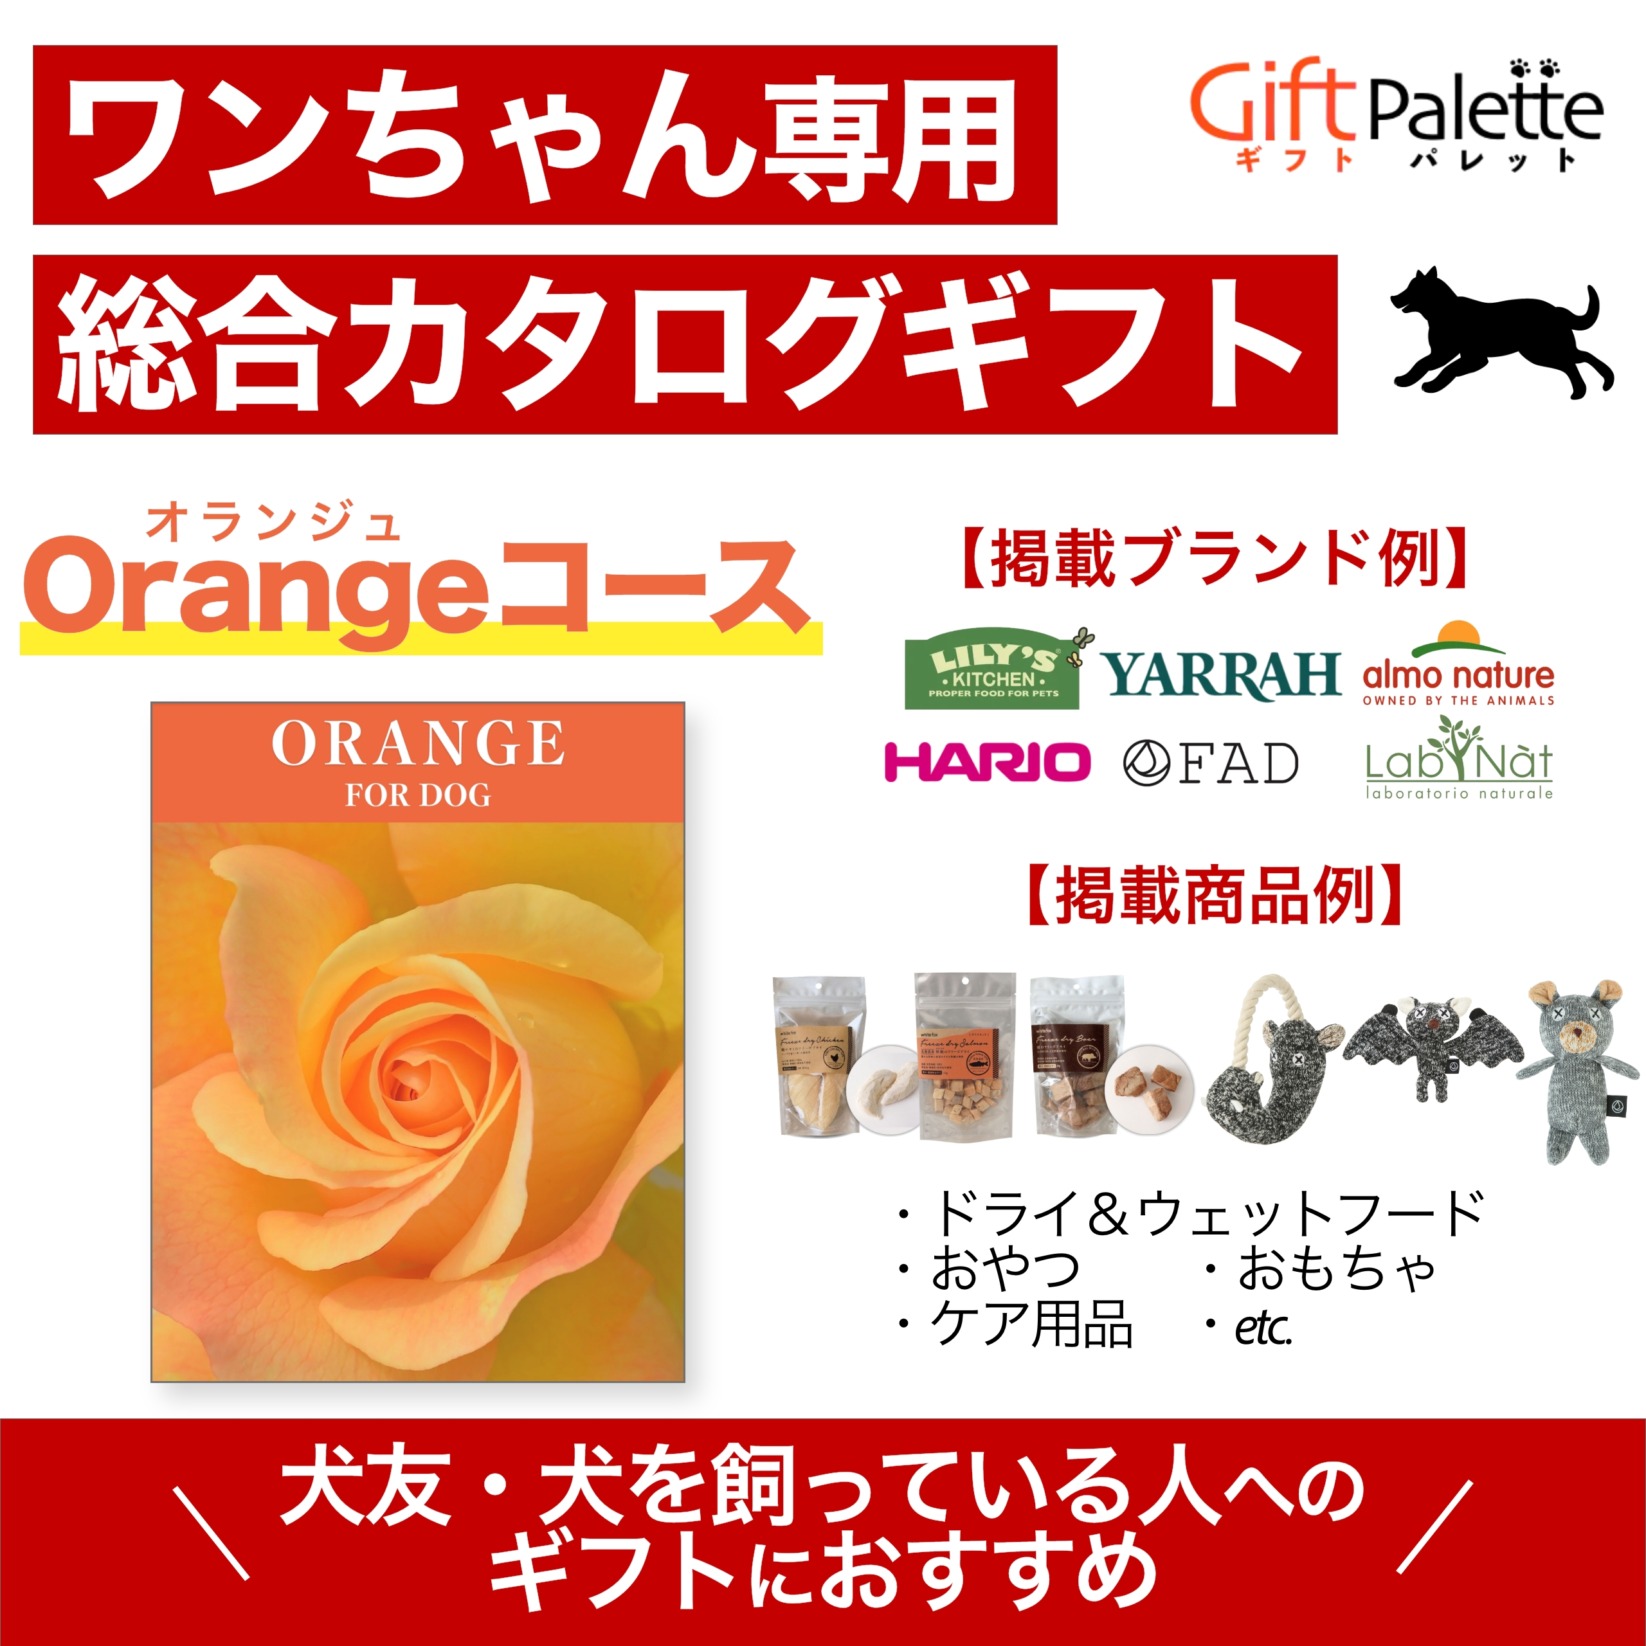 ワンちゃん向け総合オンラインカタログギフト – Orangeコース